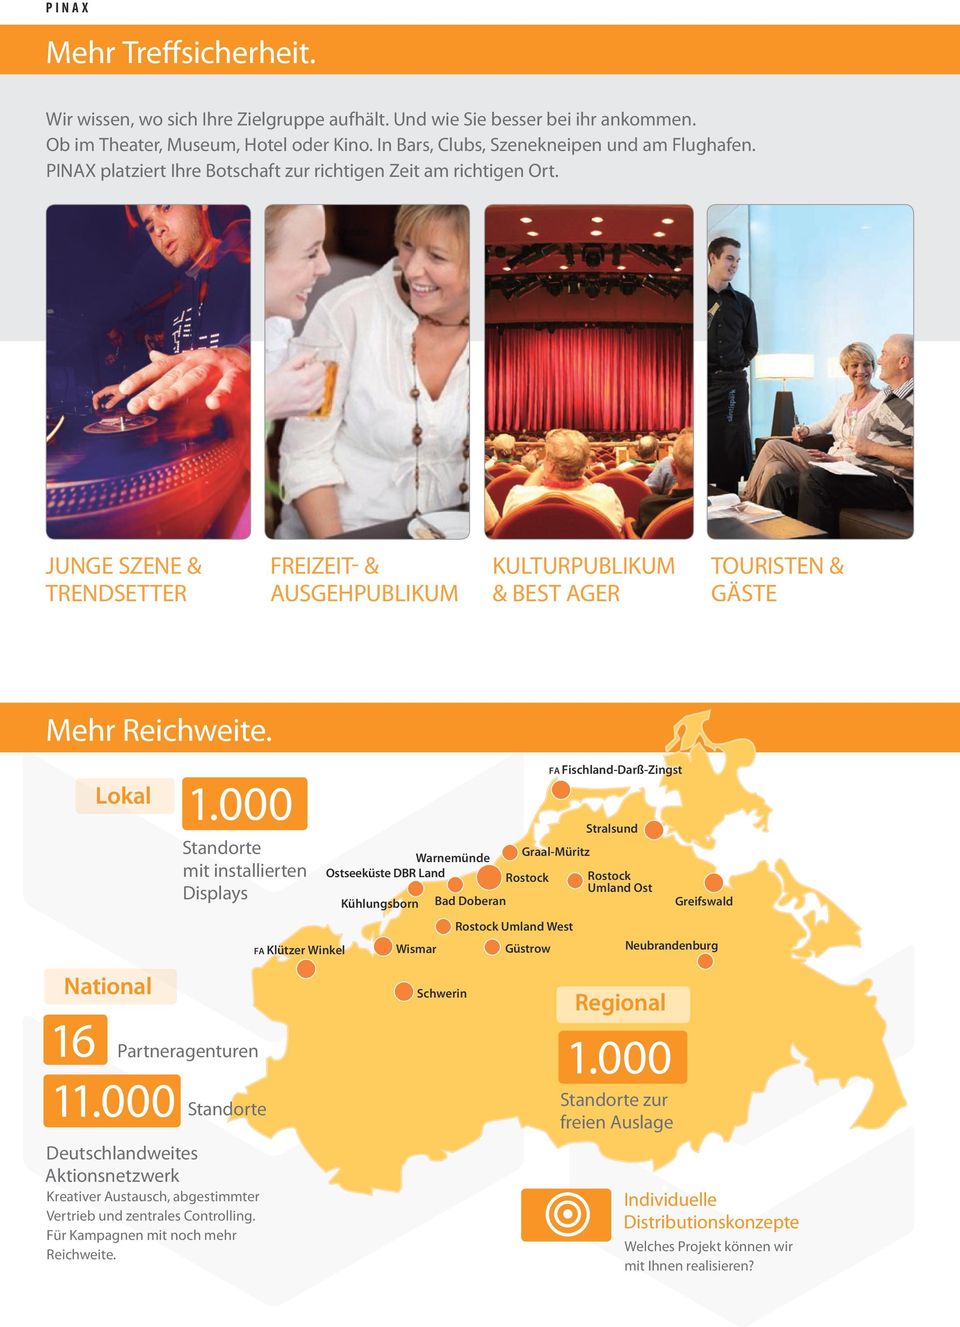 National 16 Lokal 1.000 Standorte mit installierten Displays Partneragenturen 11.000 Standorte Deutschlandweites Aktionsnetzwerk Kreativer Austausch, abgestimmter Vertrieb und zentrales Controlling.